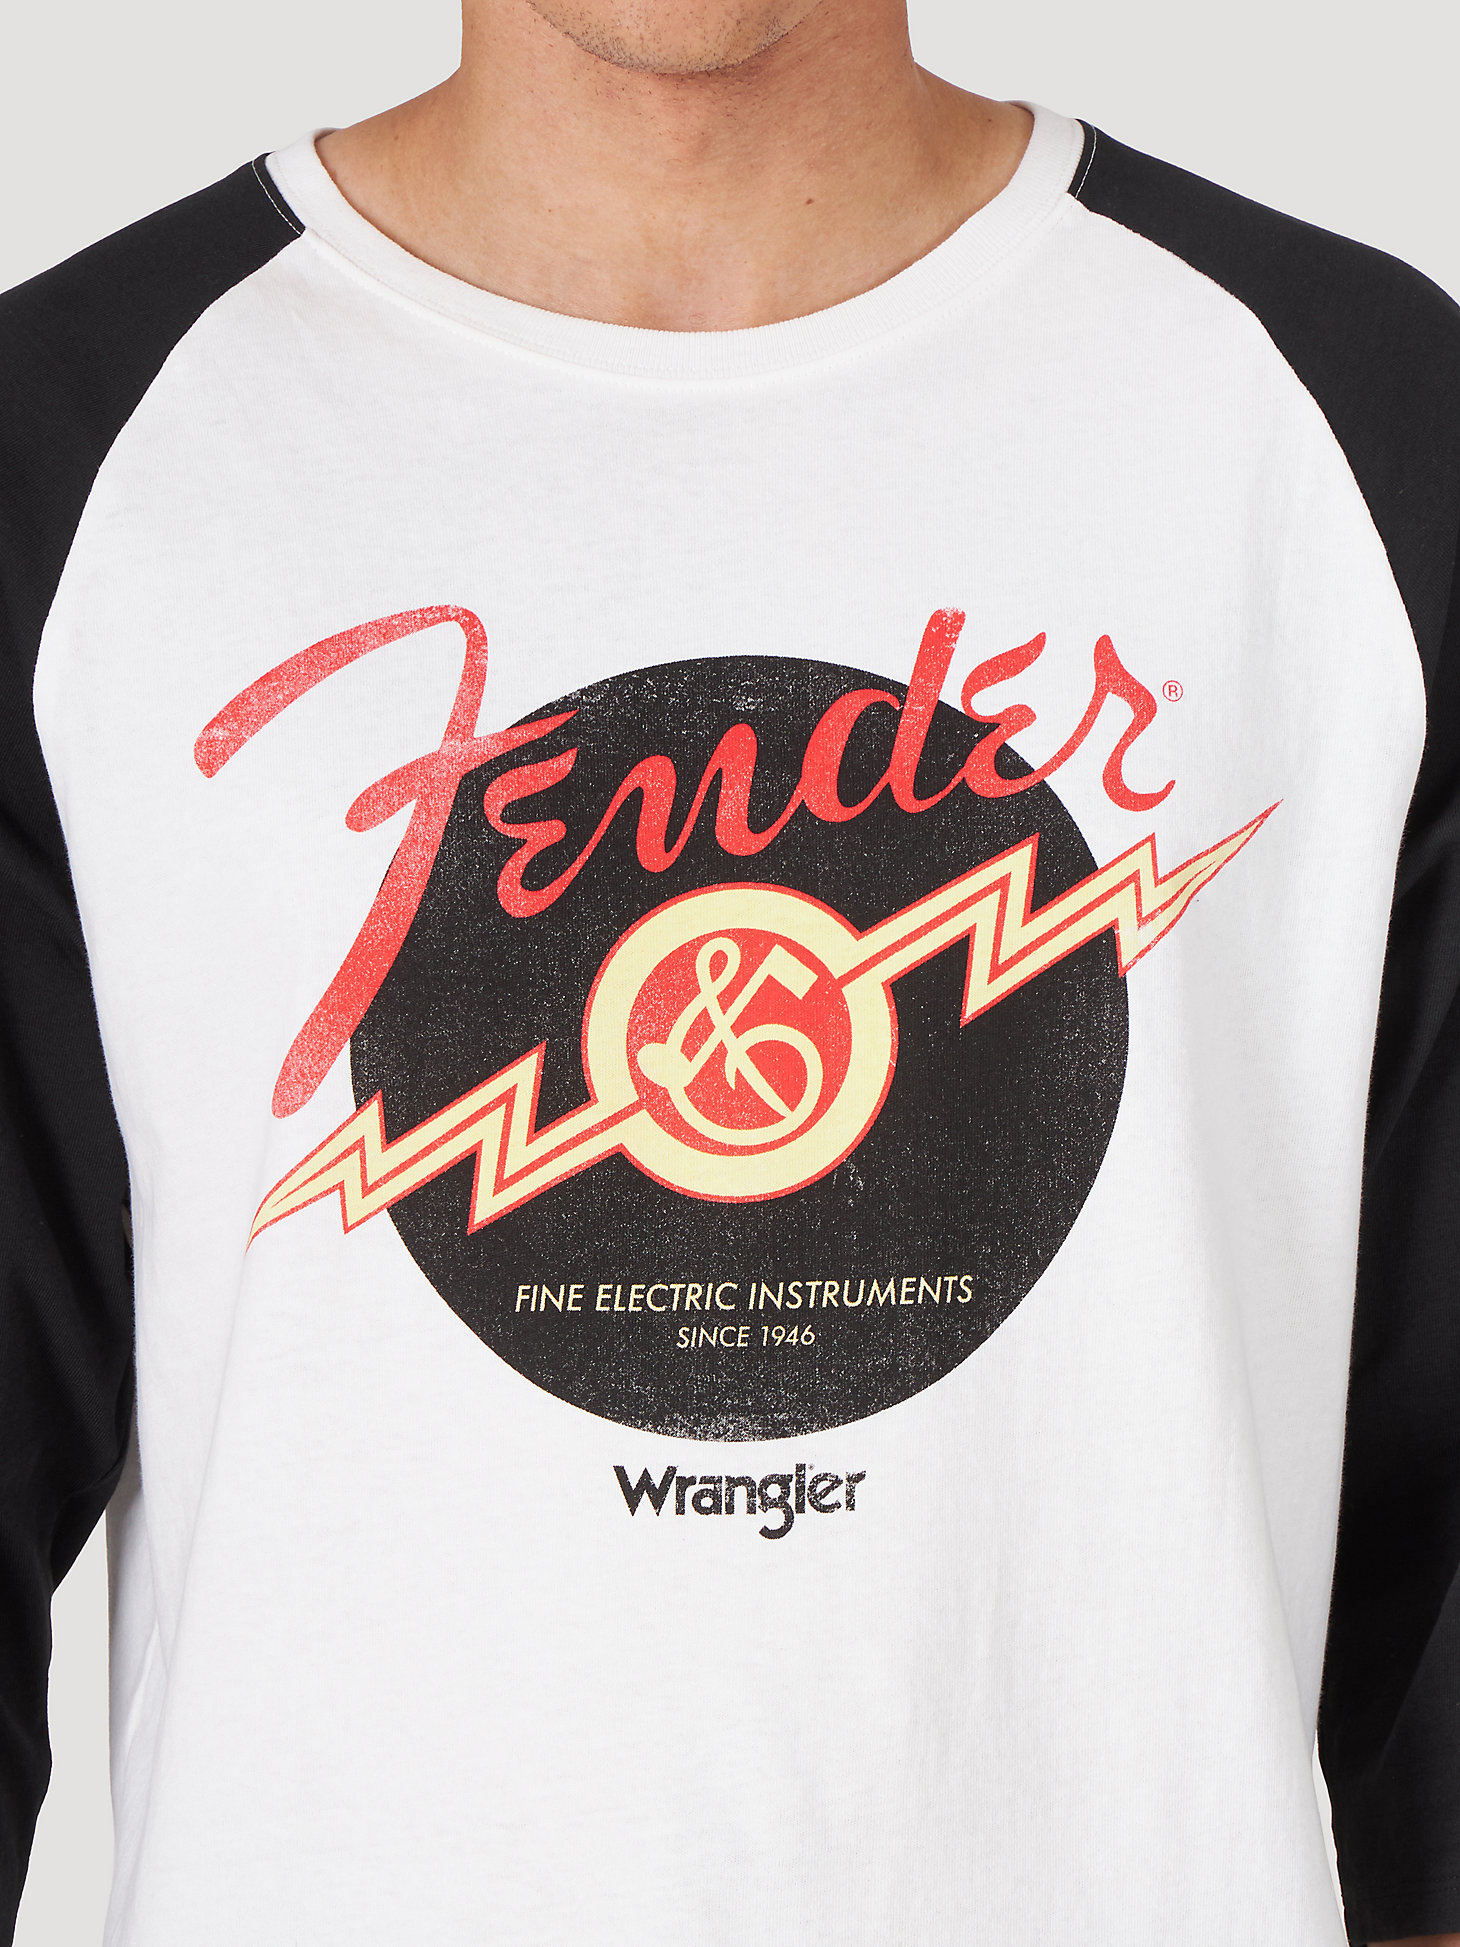 Wrangler x Fender Vinyl Baseball T-Shirt in Faded Black alternative view 2